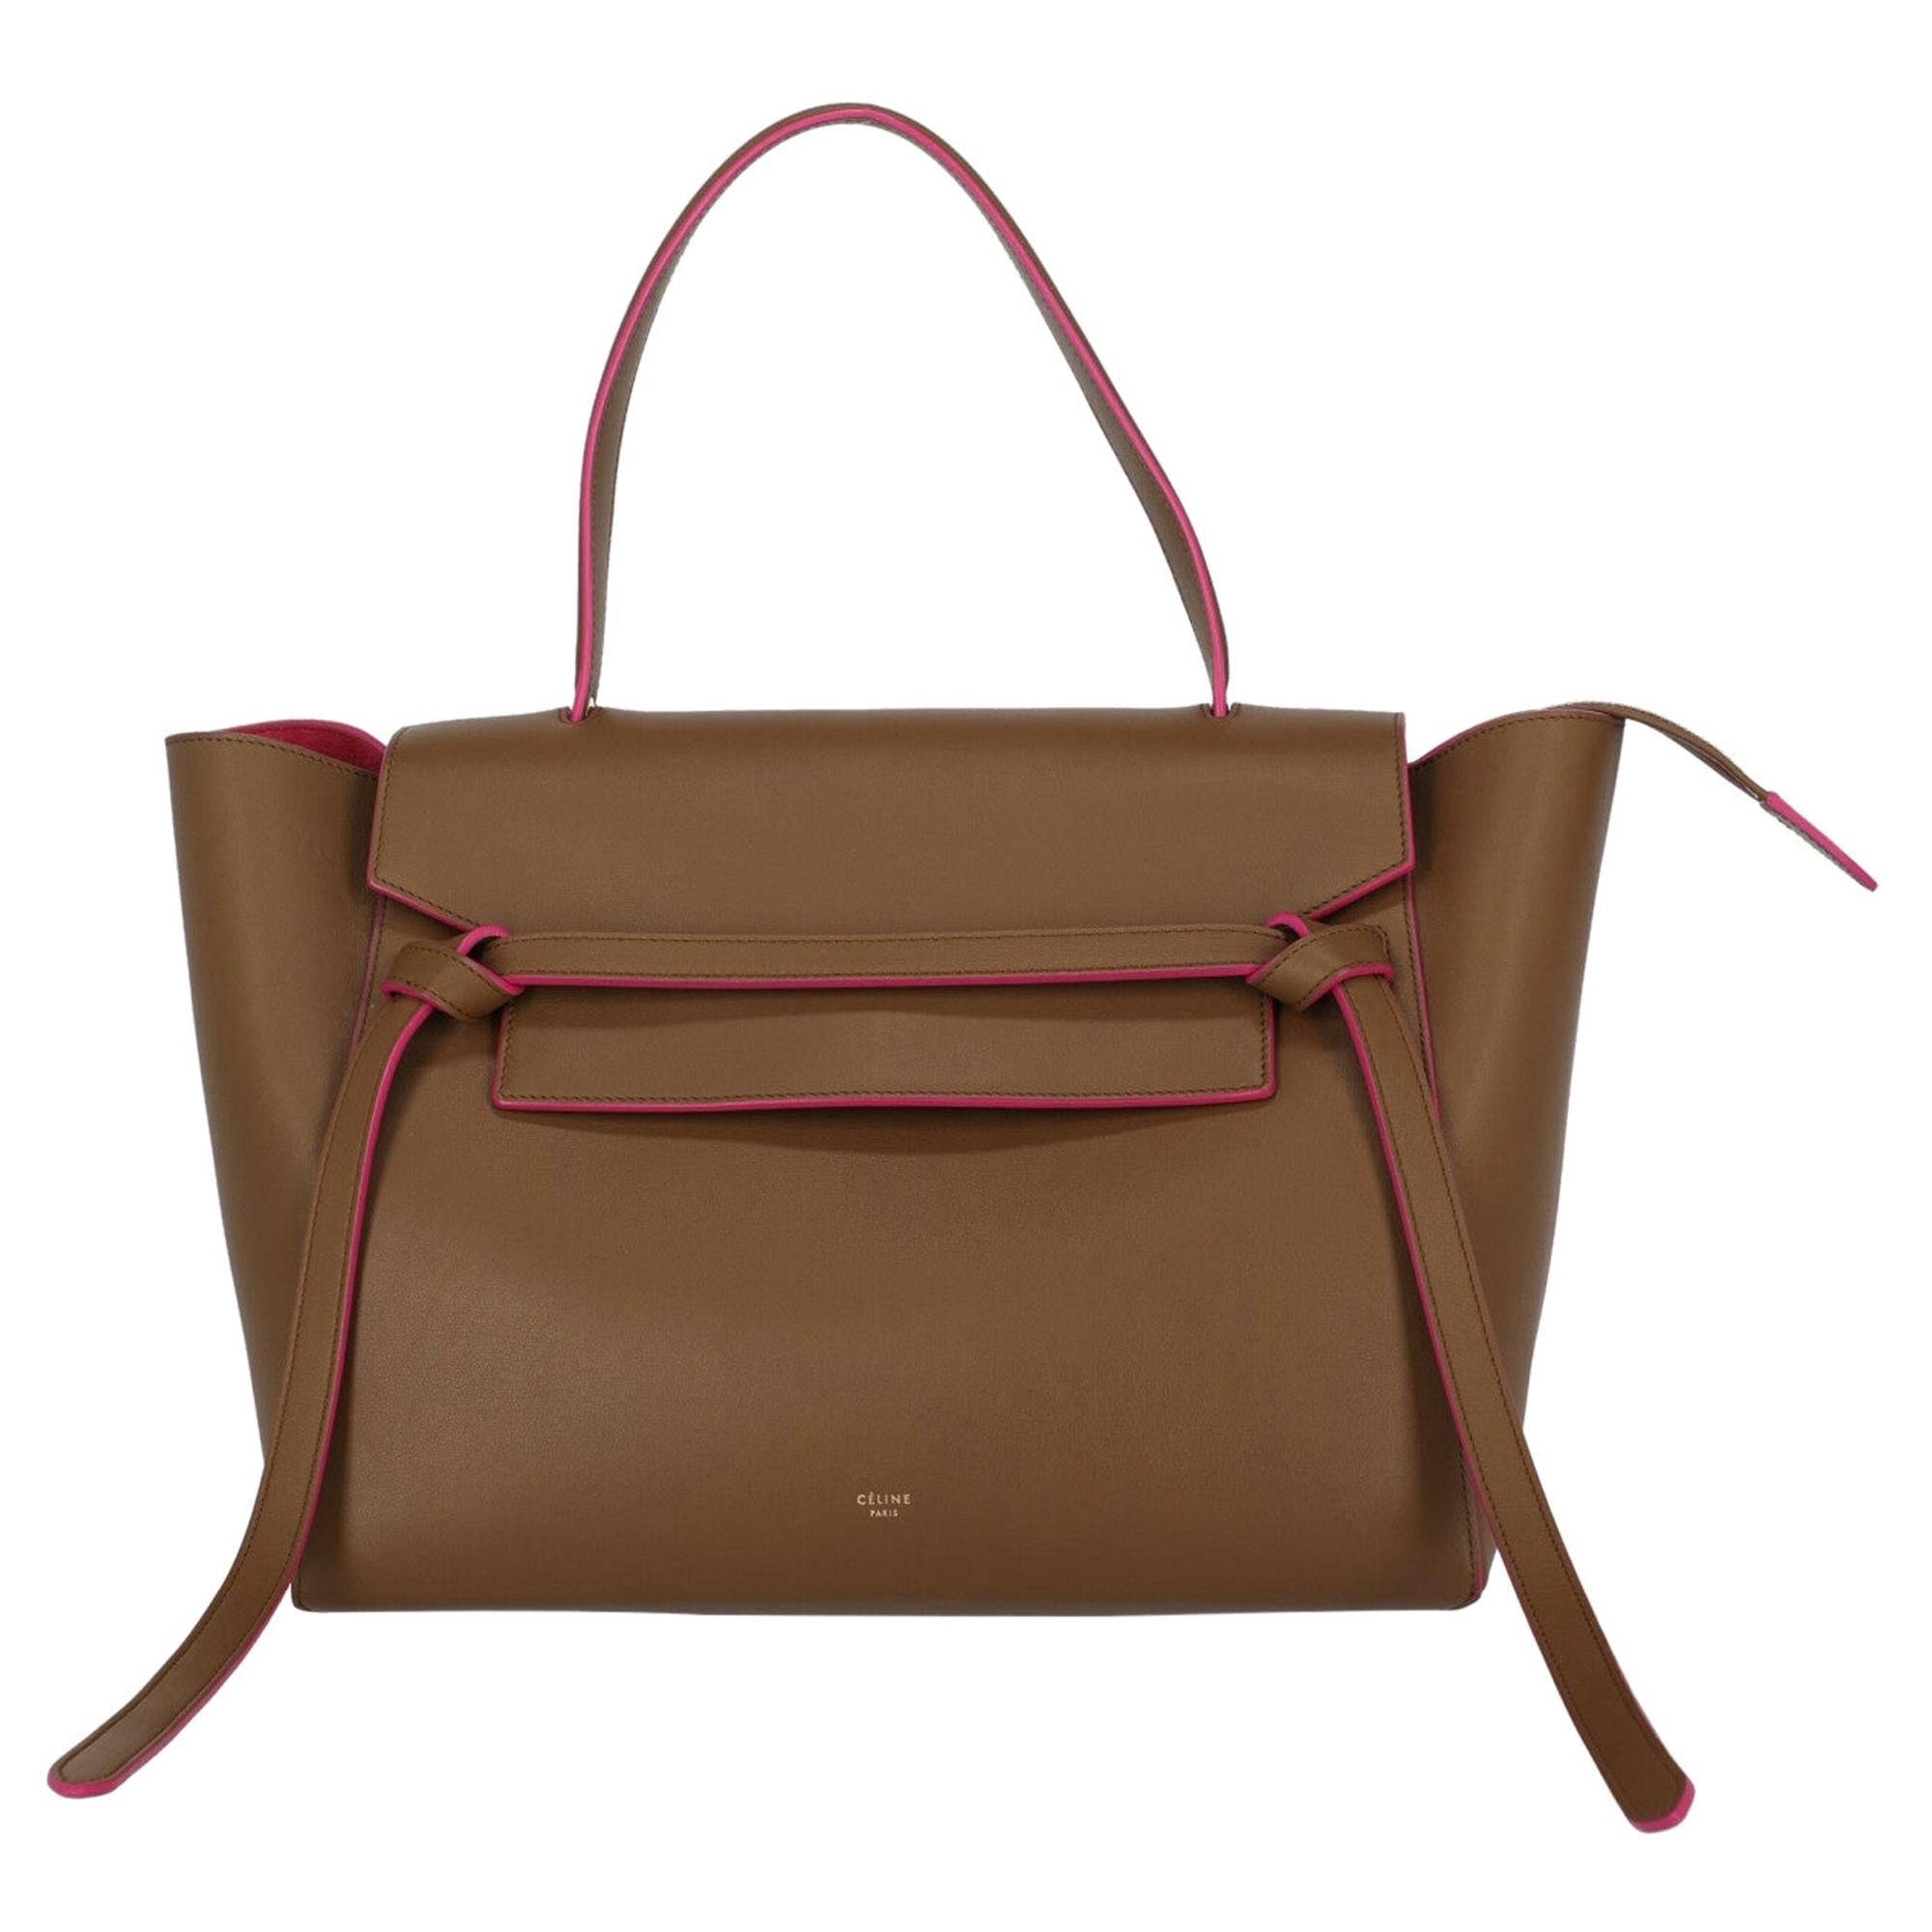 Celine Women's Handbag Belt Bag Brown/Pink Leather For Sale